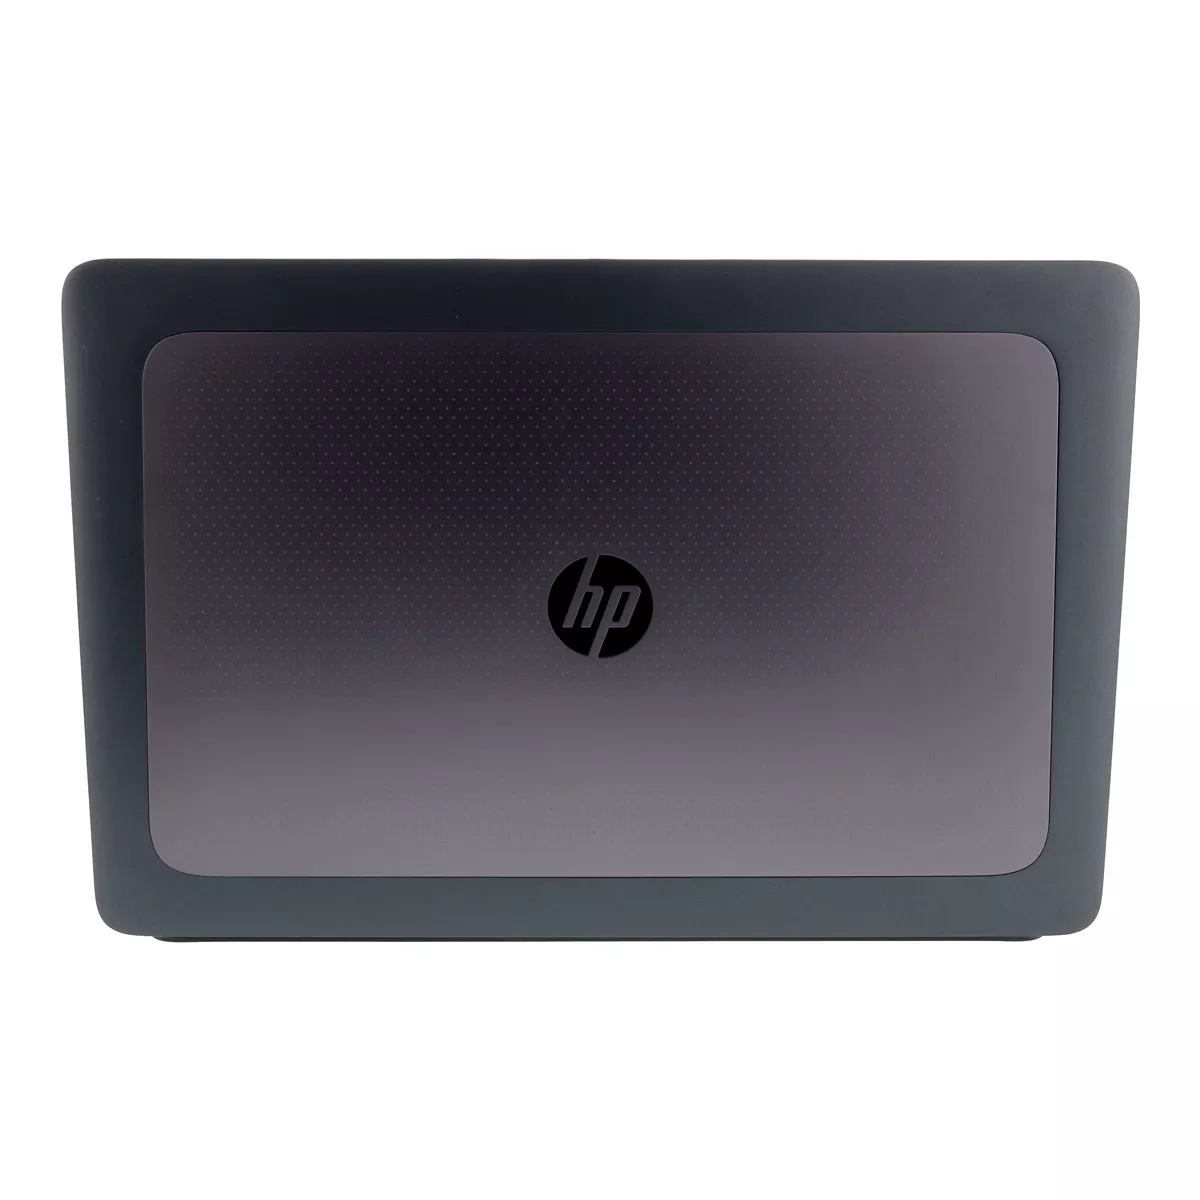 HP ZBook 17 G3 Core i7 6820HQ nVidia Quadro M3000M 16 GB 500 GB M.2 SSD B